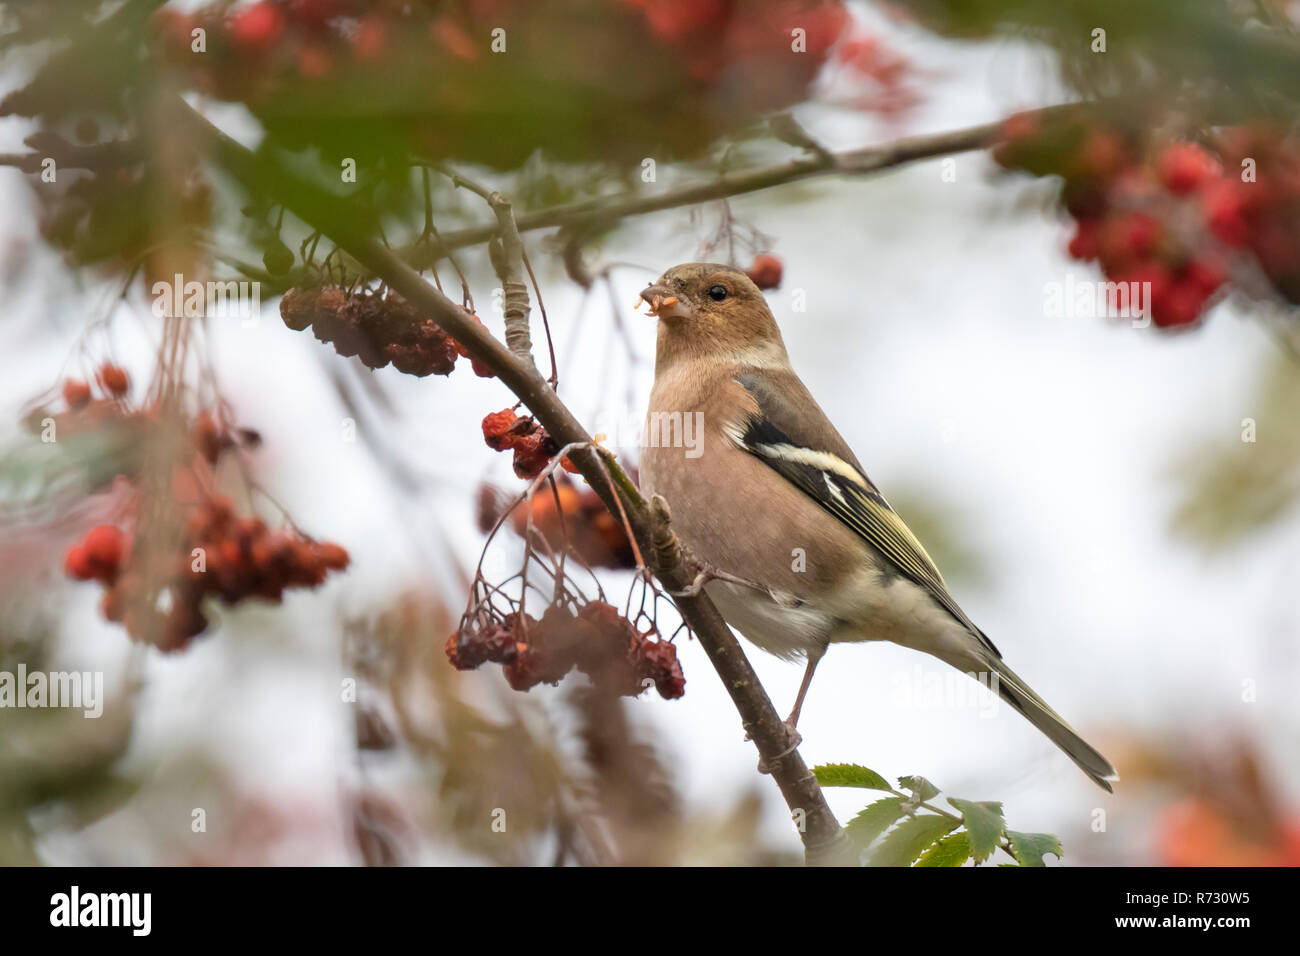 Gemeinsame Buchfink (Fringilla coelebs) essen Beeren in einem weißdornbusch auf eine körnige Tag im Herbst Saison Stockfoto